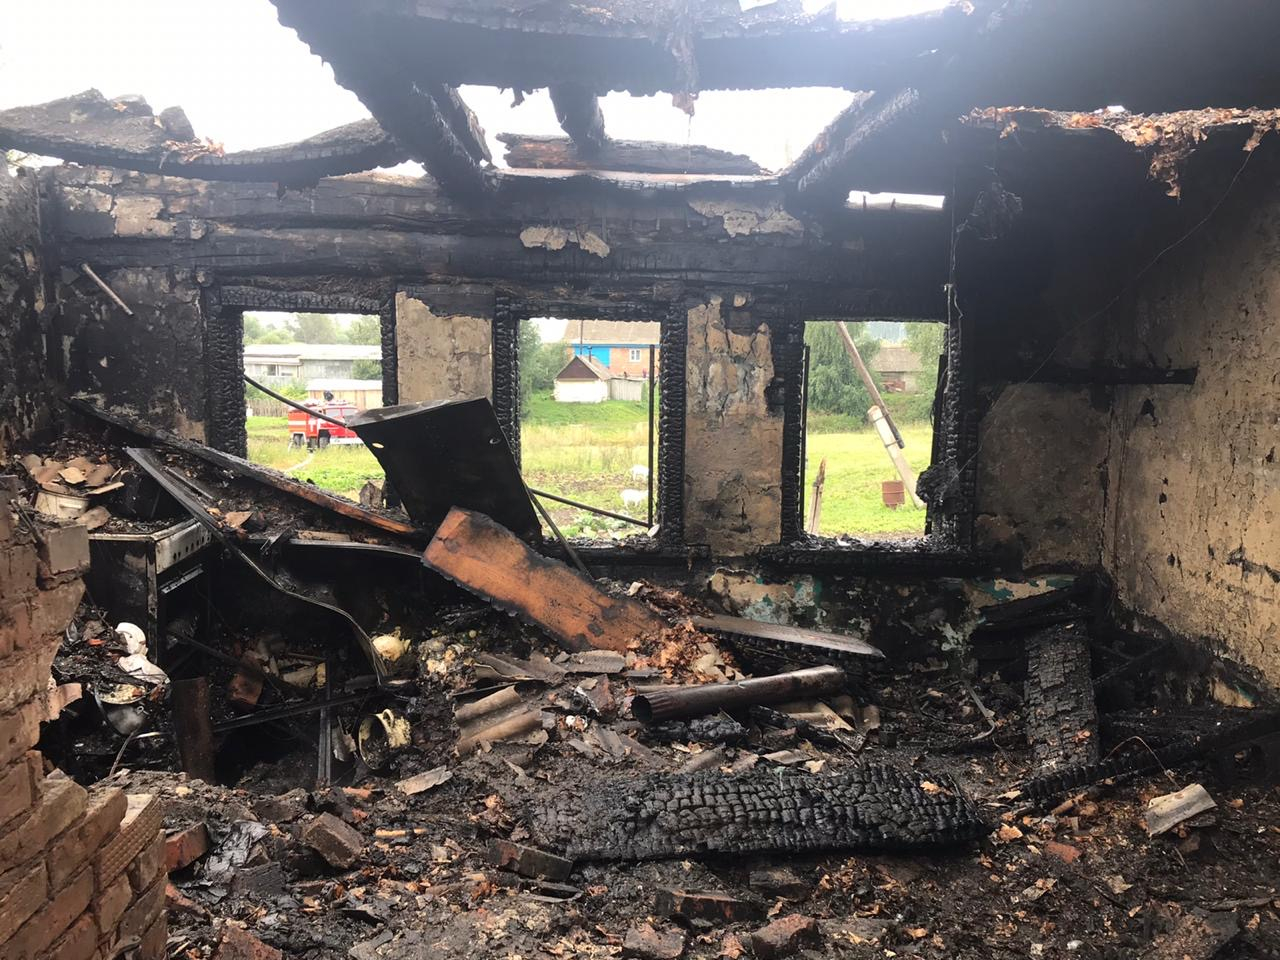 В Мордовии отец получил ожоги, спасая своих детей из горящего дома